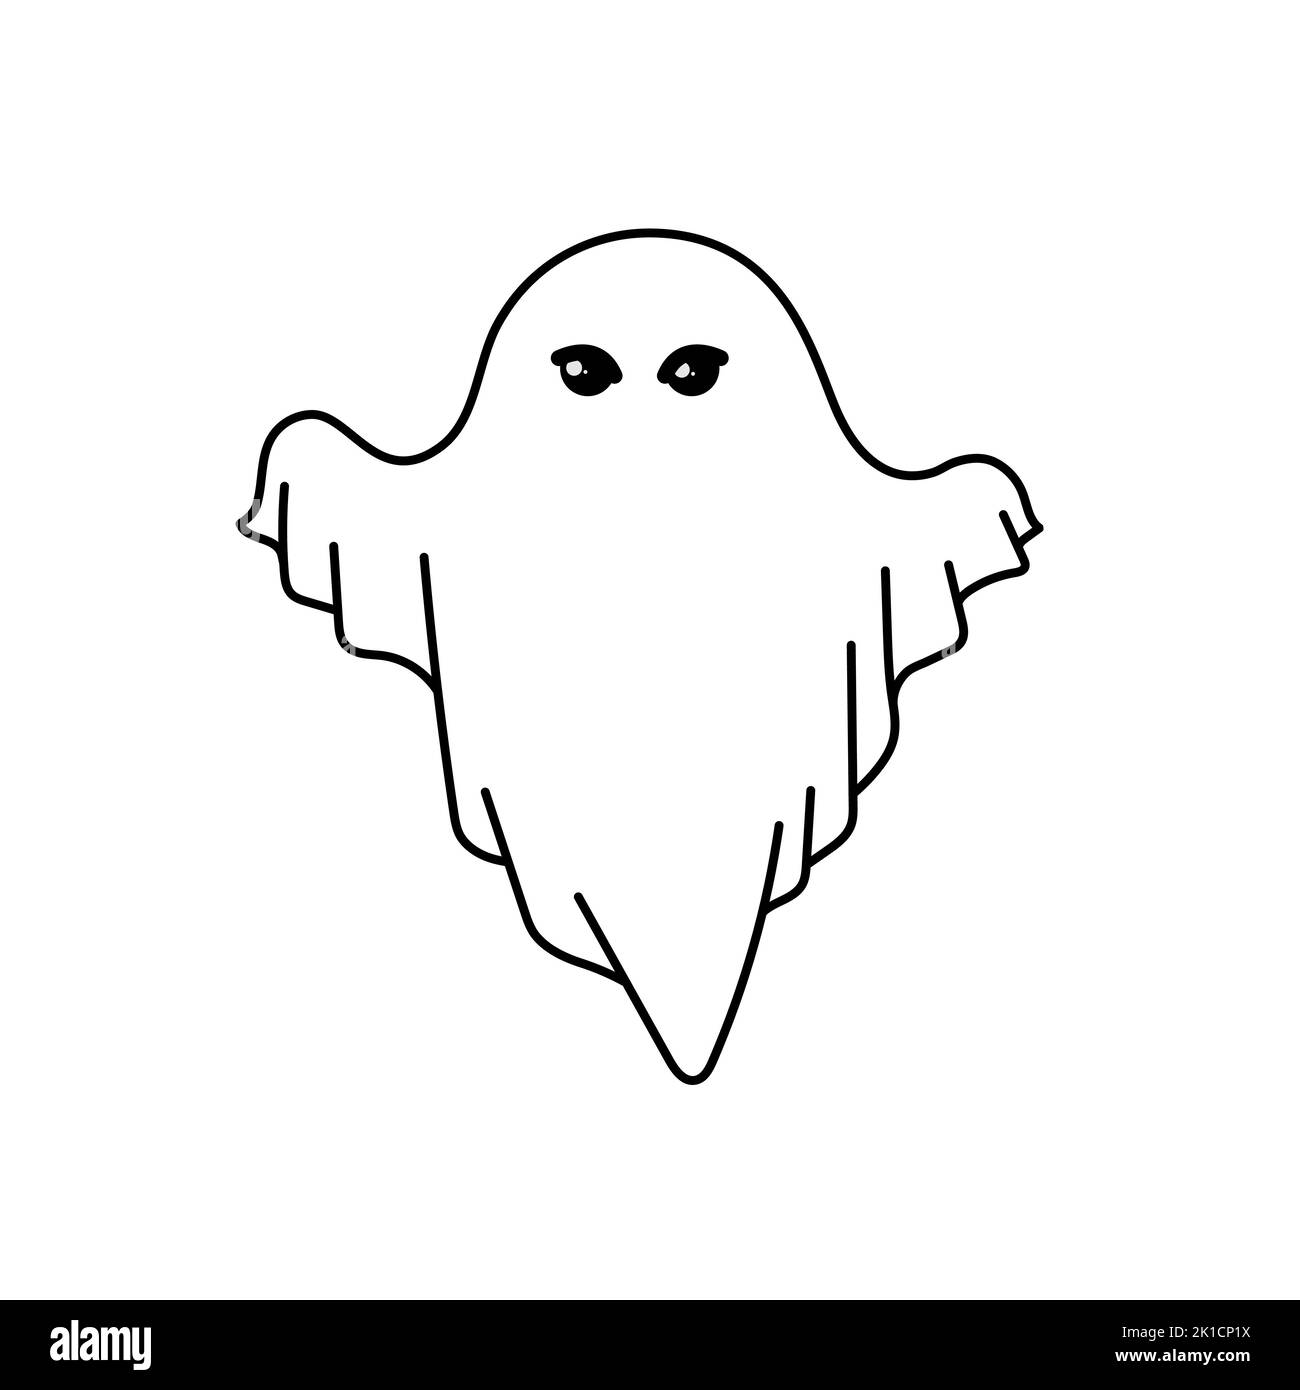 Personnage de dessin animé fantôme. Joli contour vol fantôme isolé sous la feuille blanche. Logo Halloween. Icône de conception plate pour brochure, bannière, site Web. Vecteur Illustration de Vecteur